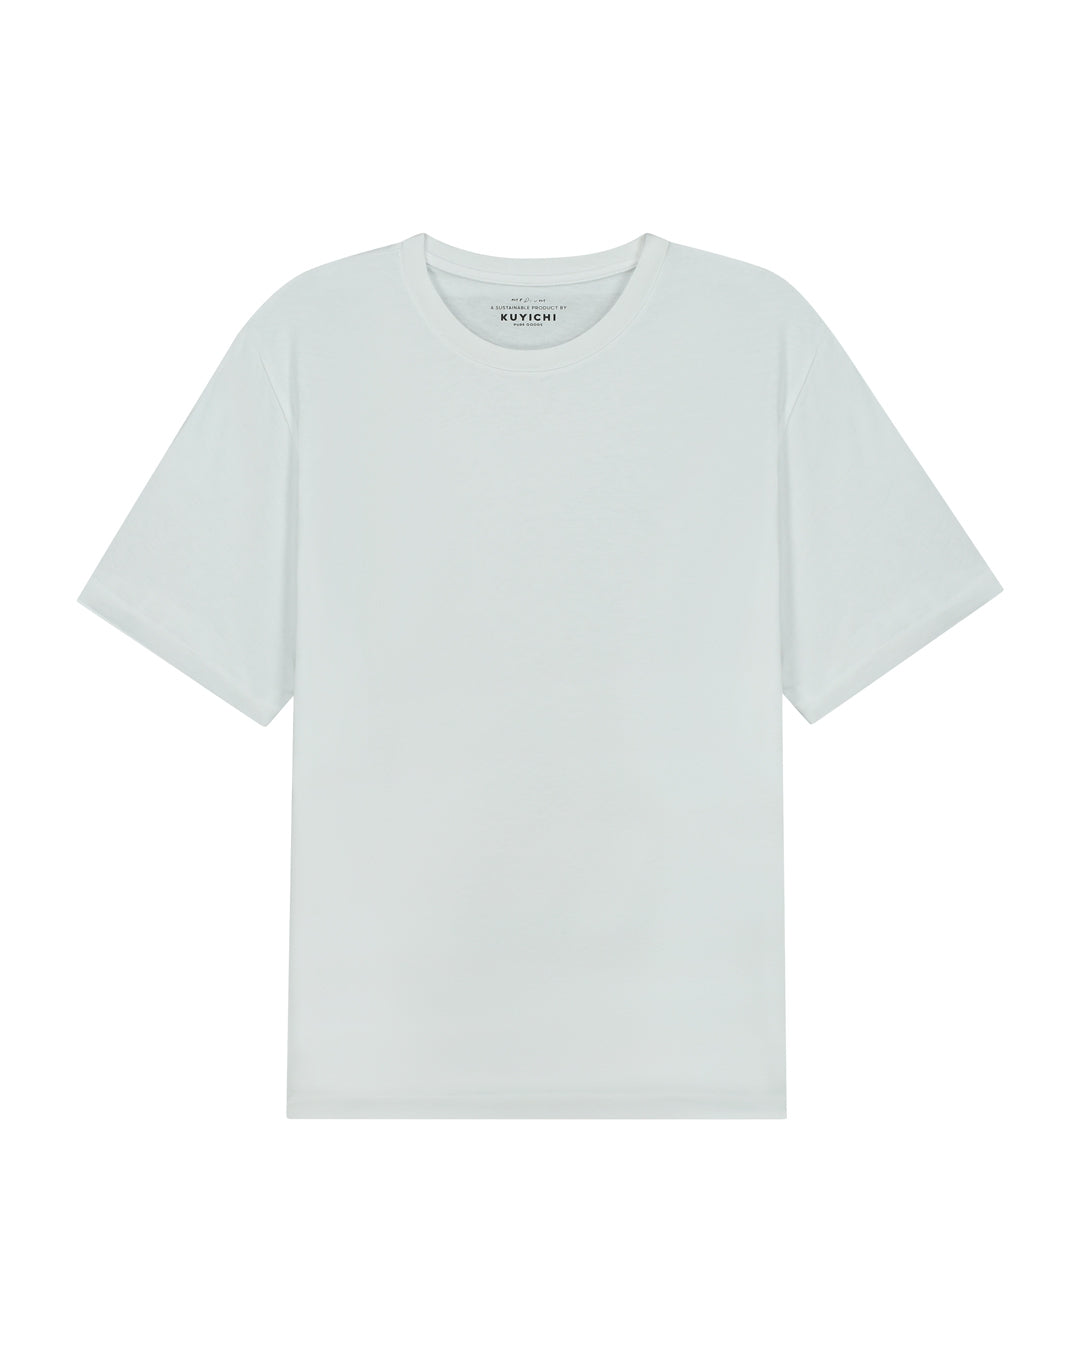 t-shirt buckley, white, herren - kuyichi